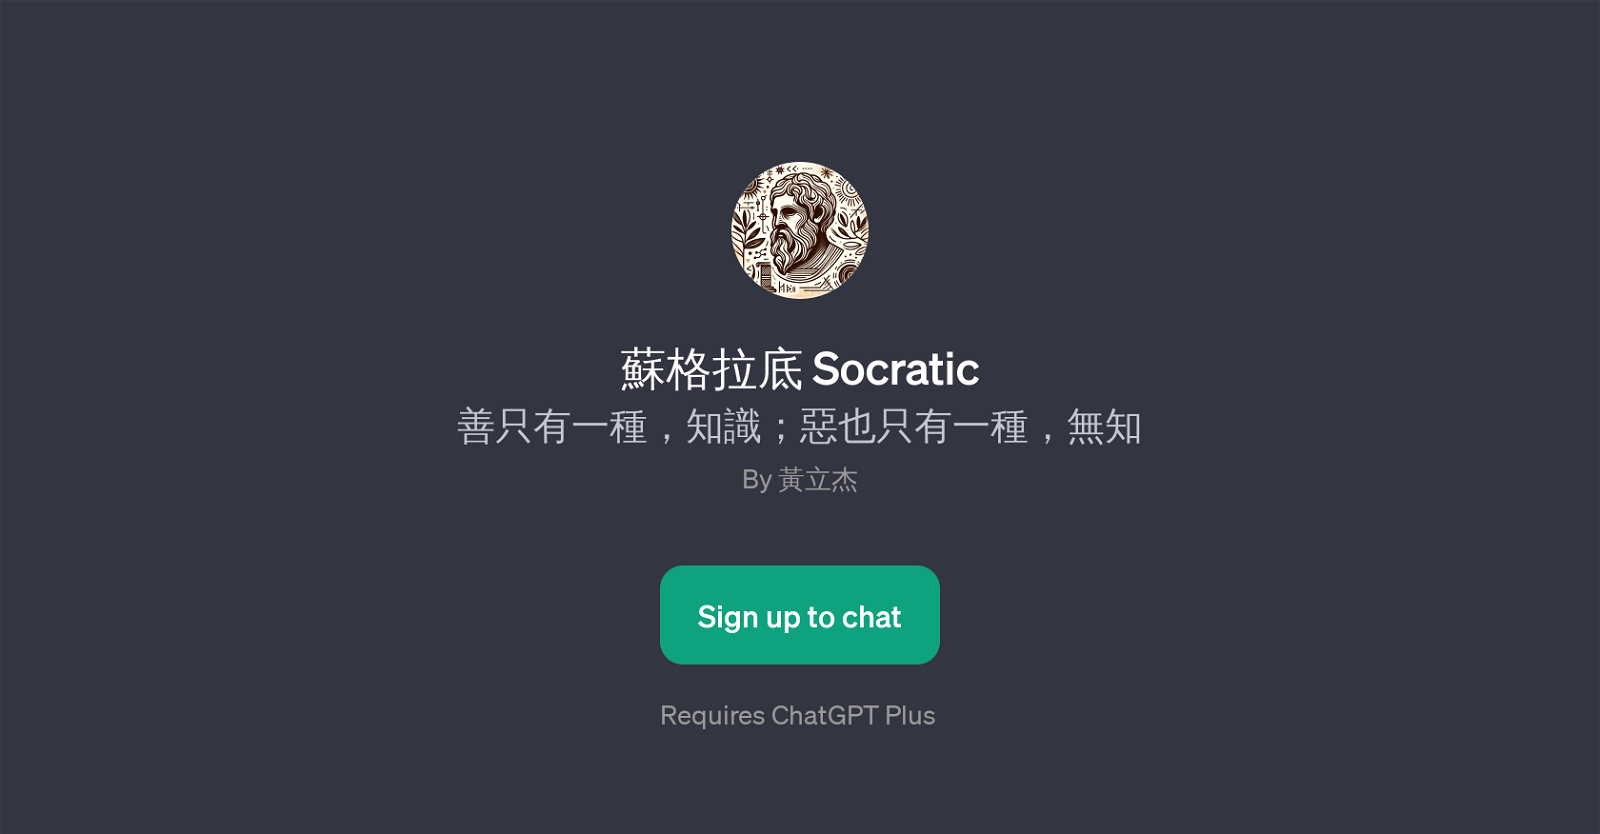 Socratic website